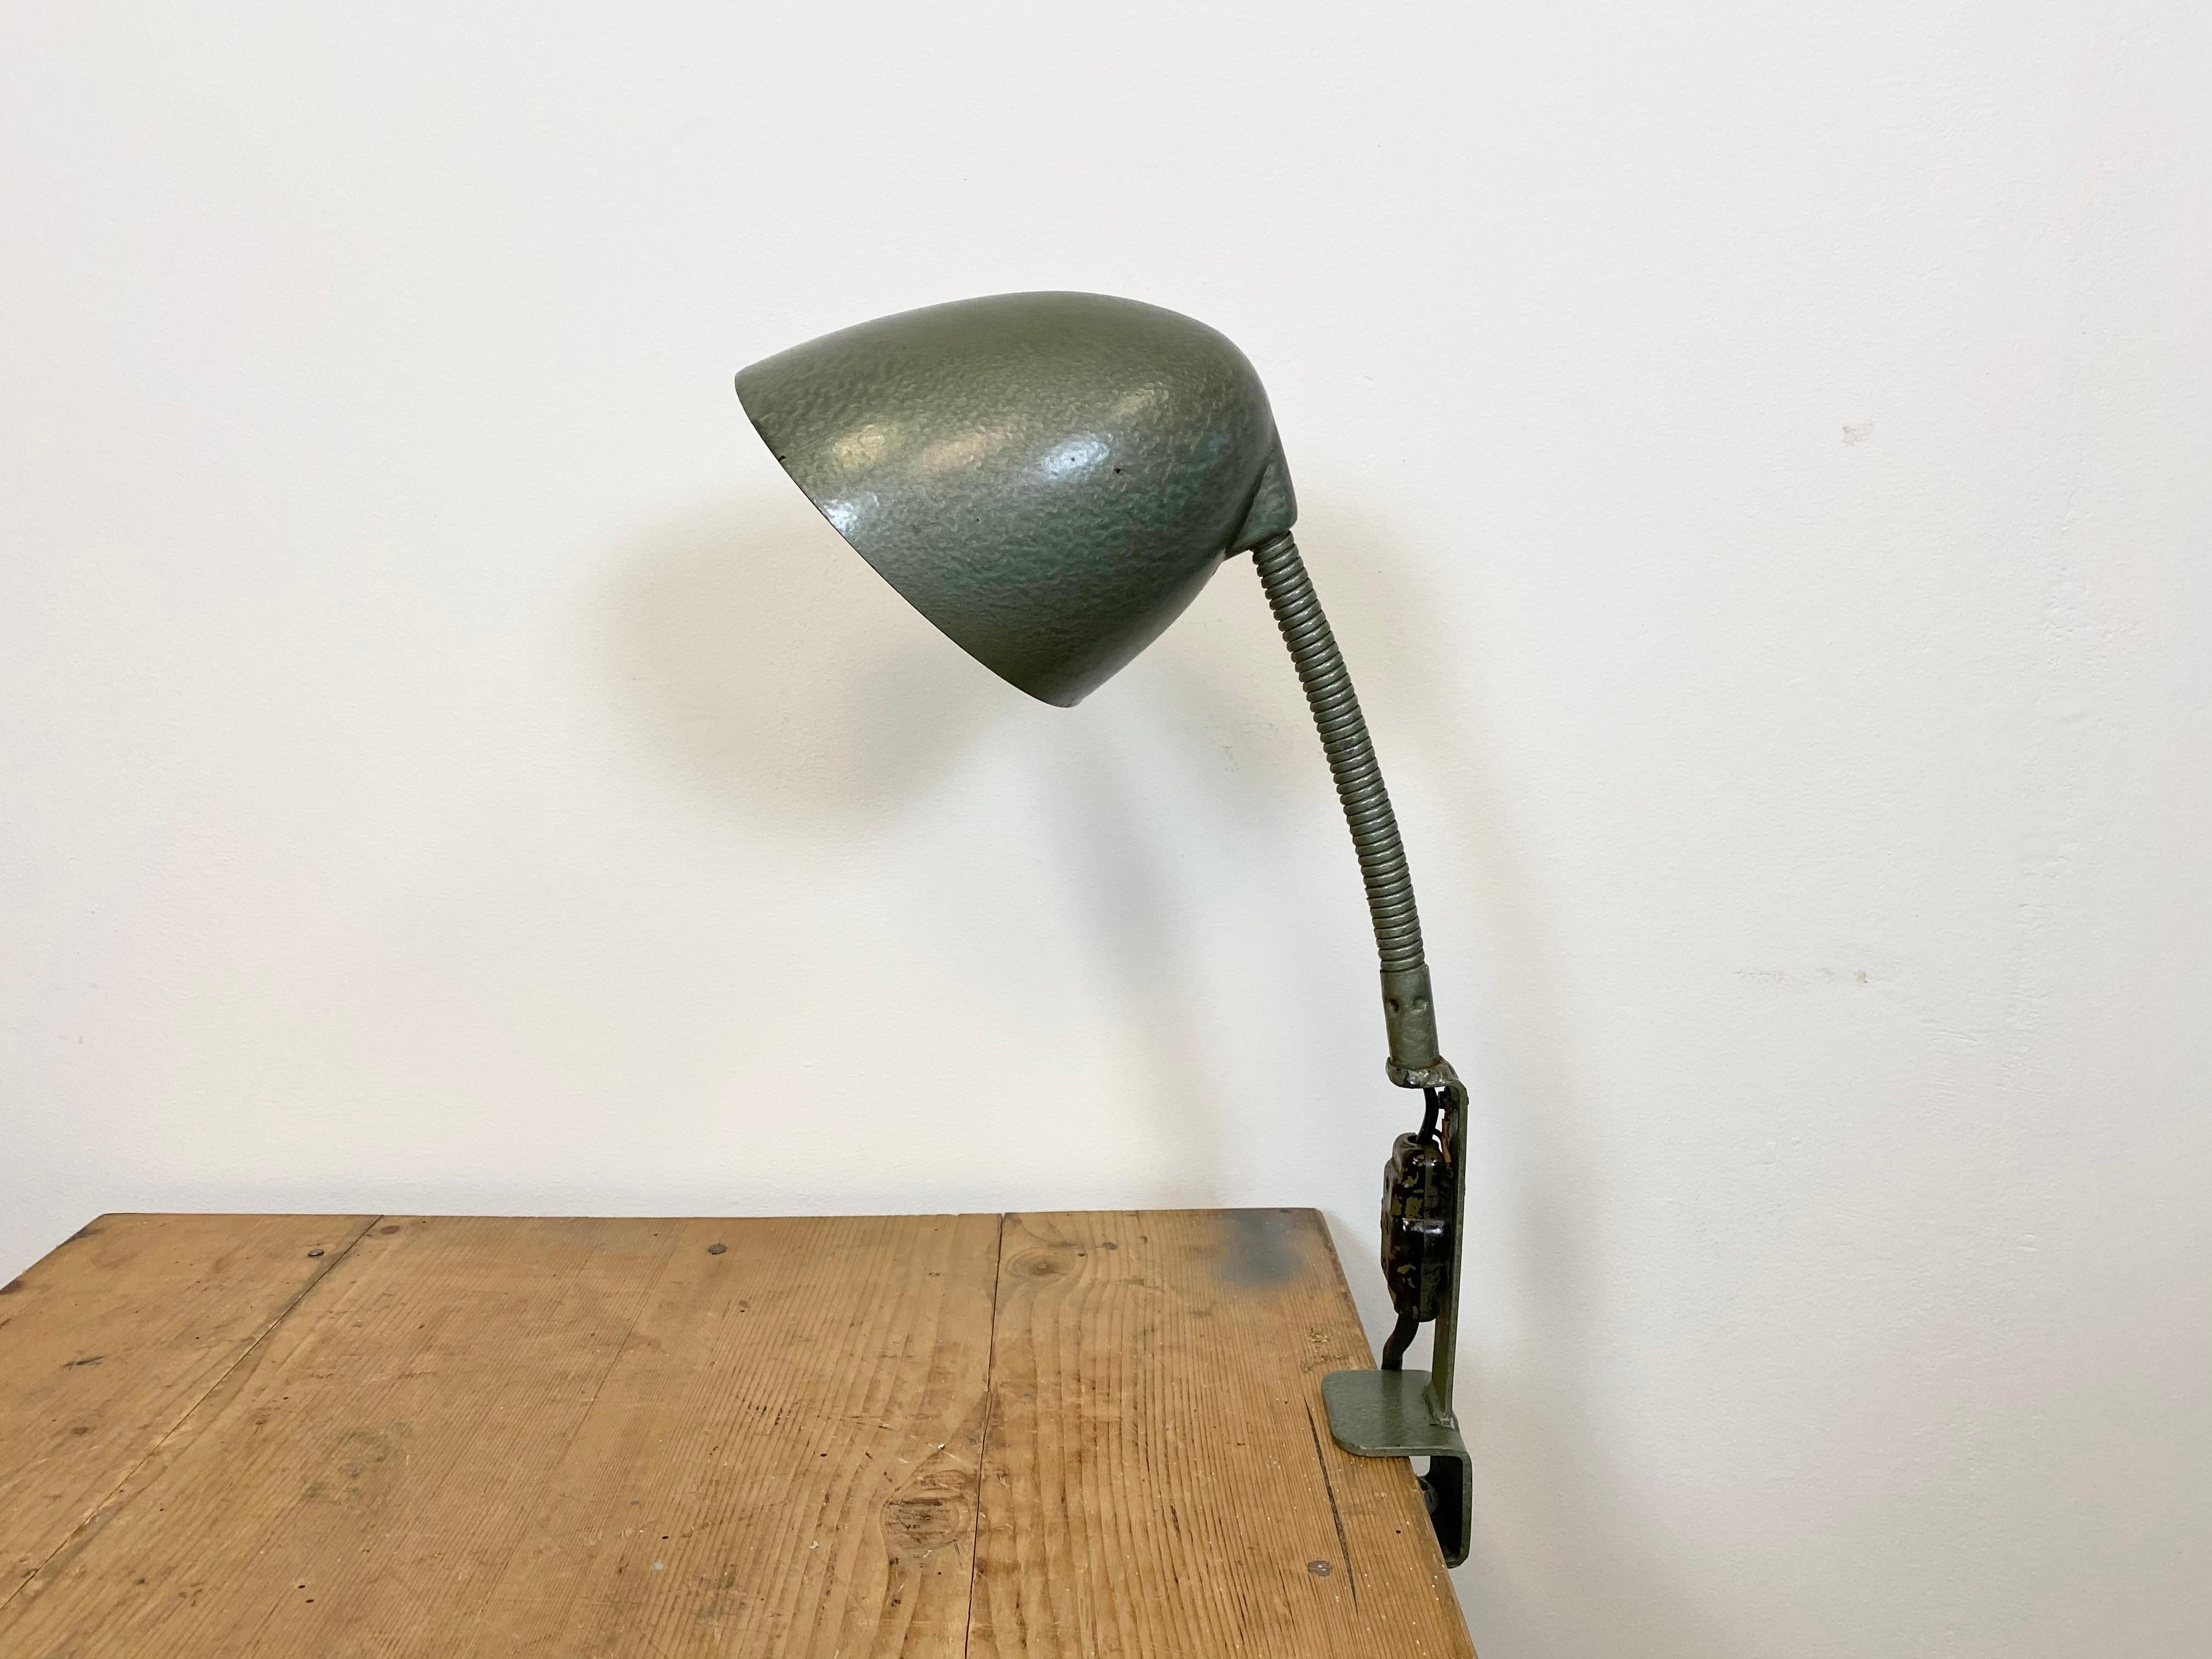 Lampe de table industrielle à peinture martelée verte fabriquée par Elektroinstala Decín dans l'ancienne Tchécoslovaquie au cours des années 1960. Elle est dotée d'un abat-jour en bakélite, d'un col de cygne en fer et d'une base à pince. La douille